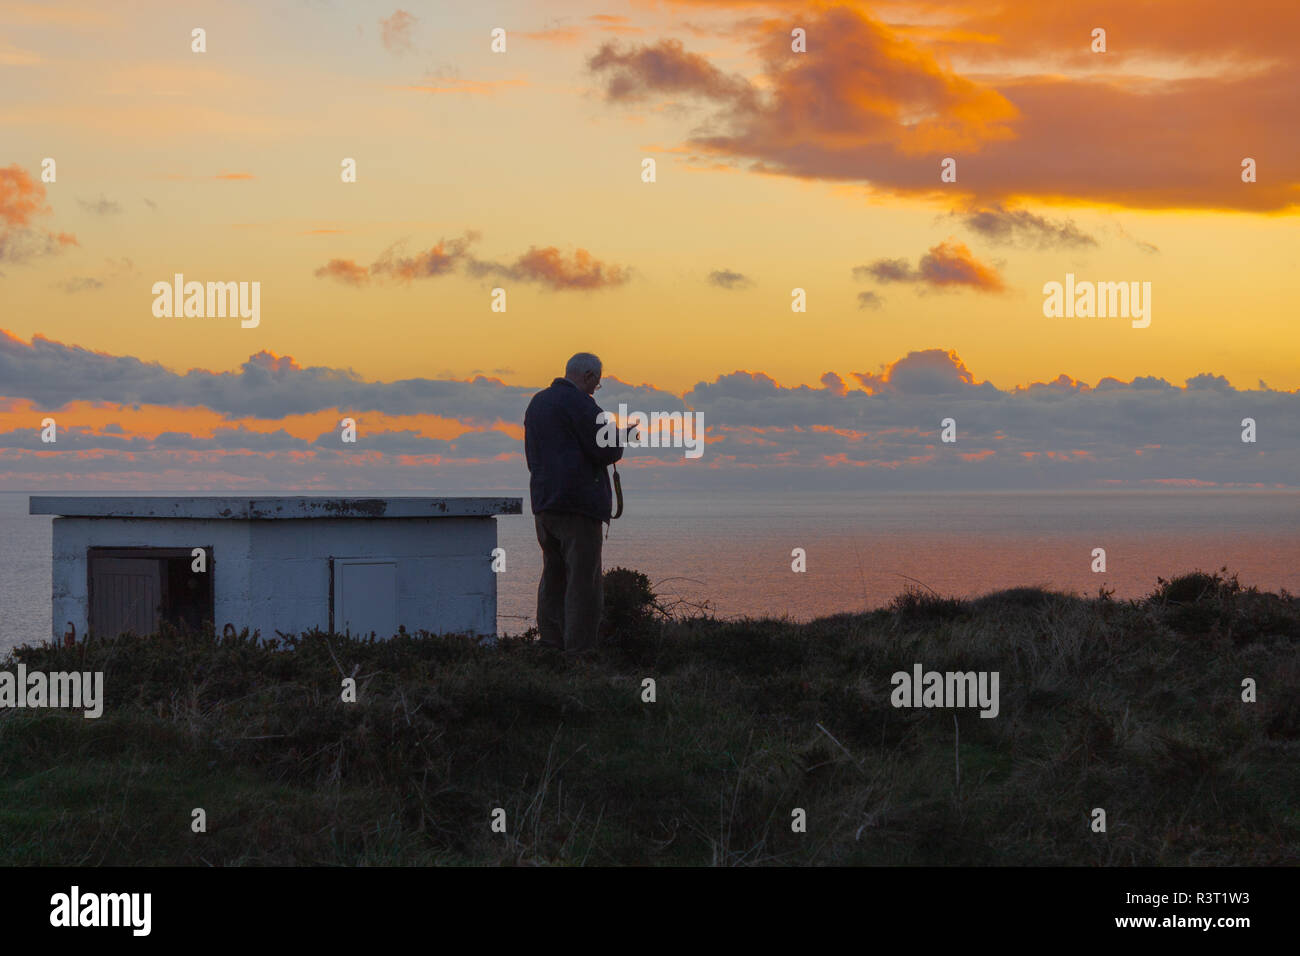 Fotograf sucht sein Bild nach der Aufnahme eines Bildes auf den Sonnenuntergang oder Sonnenuntergang. Stockfoto